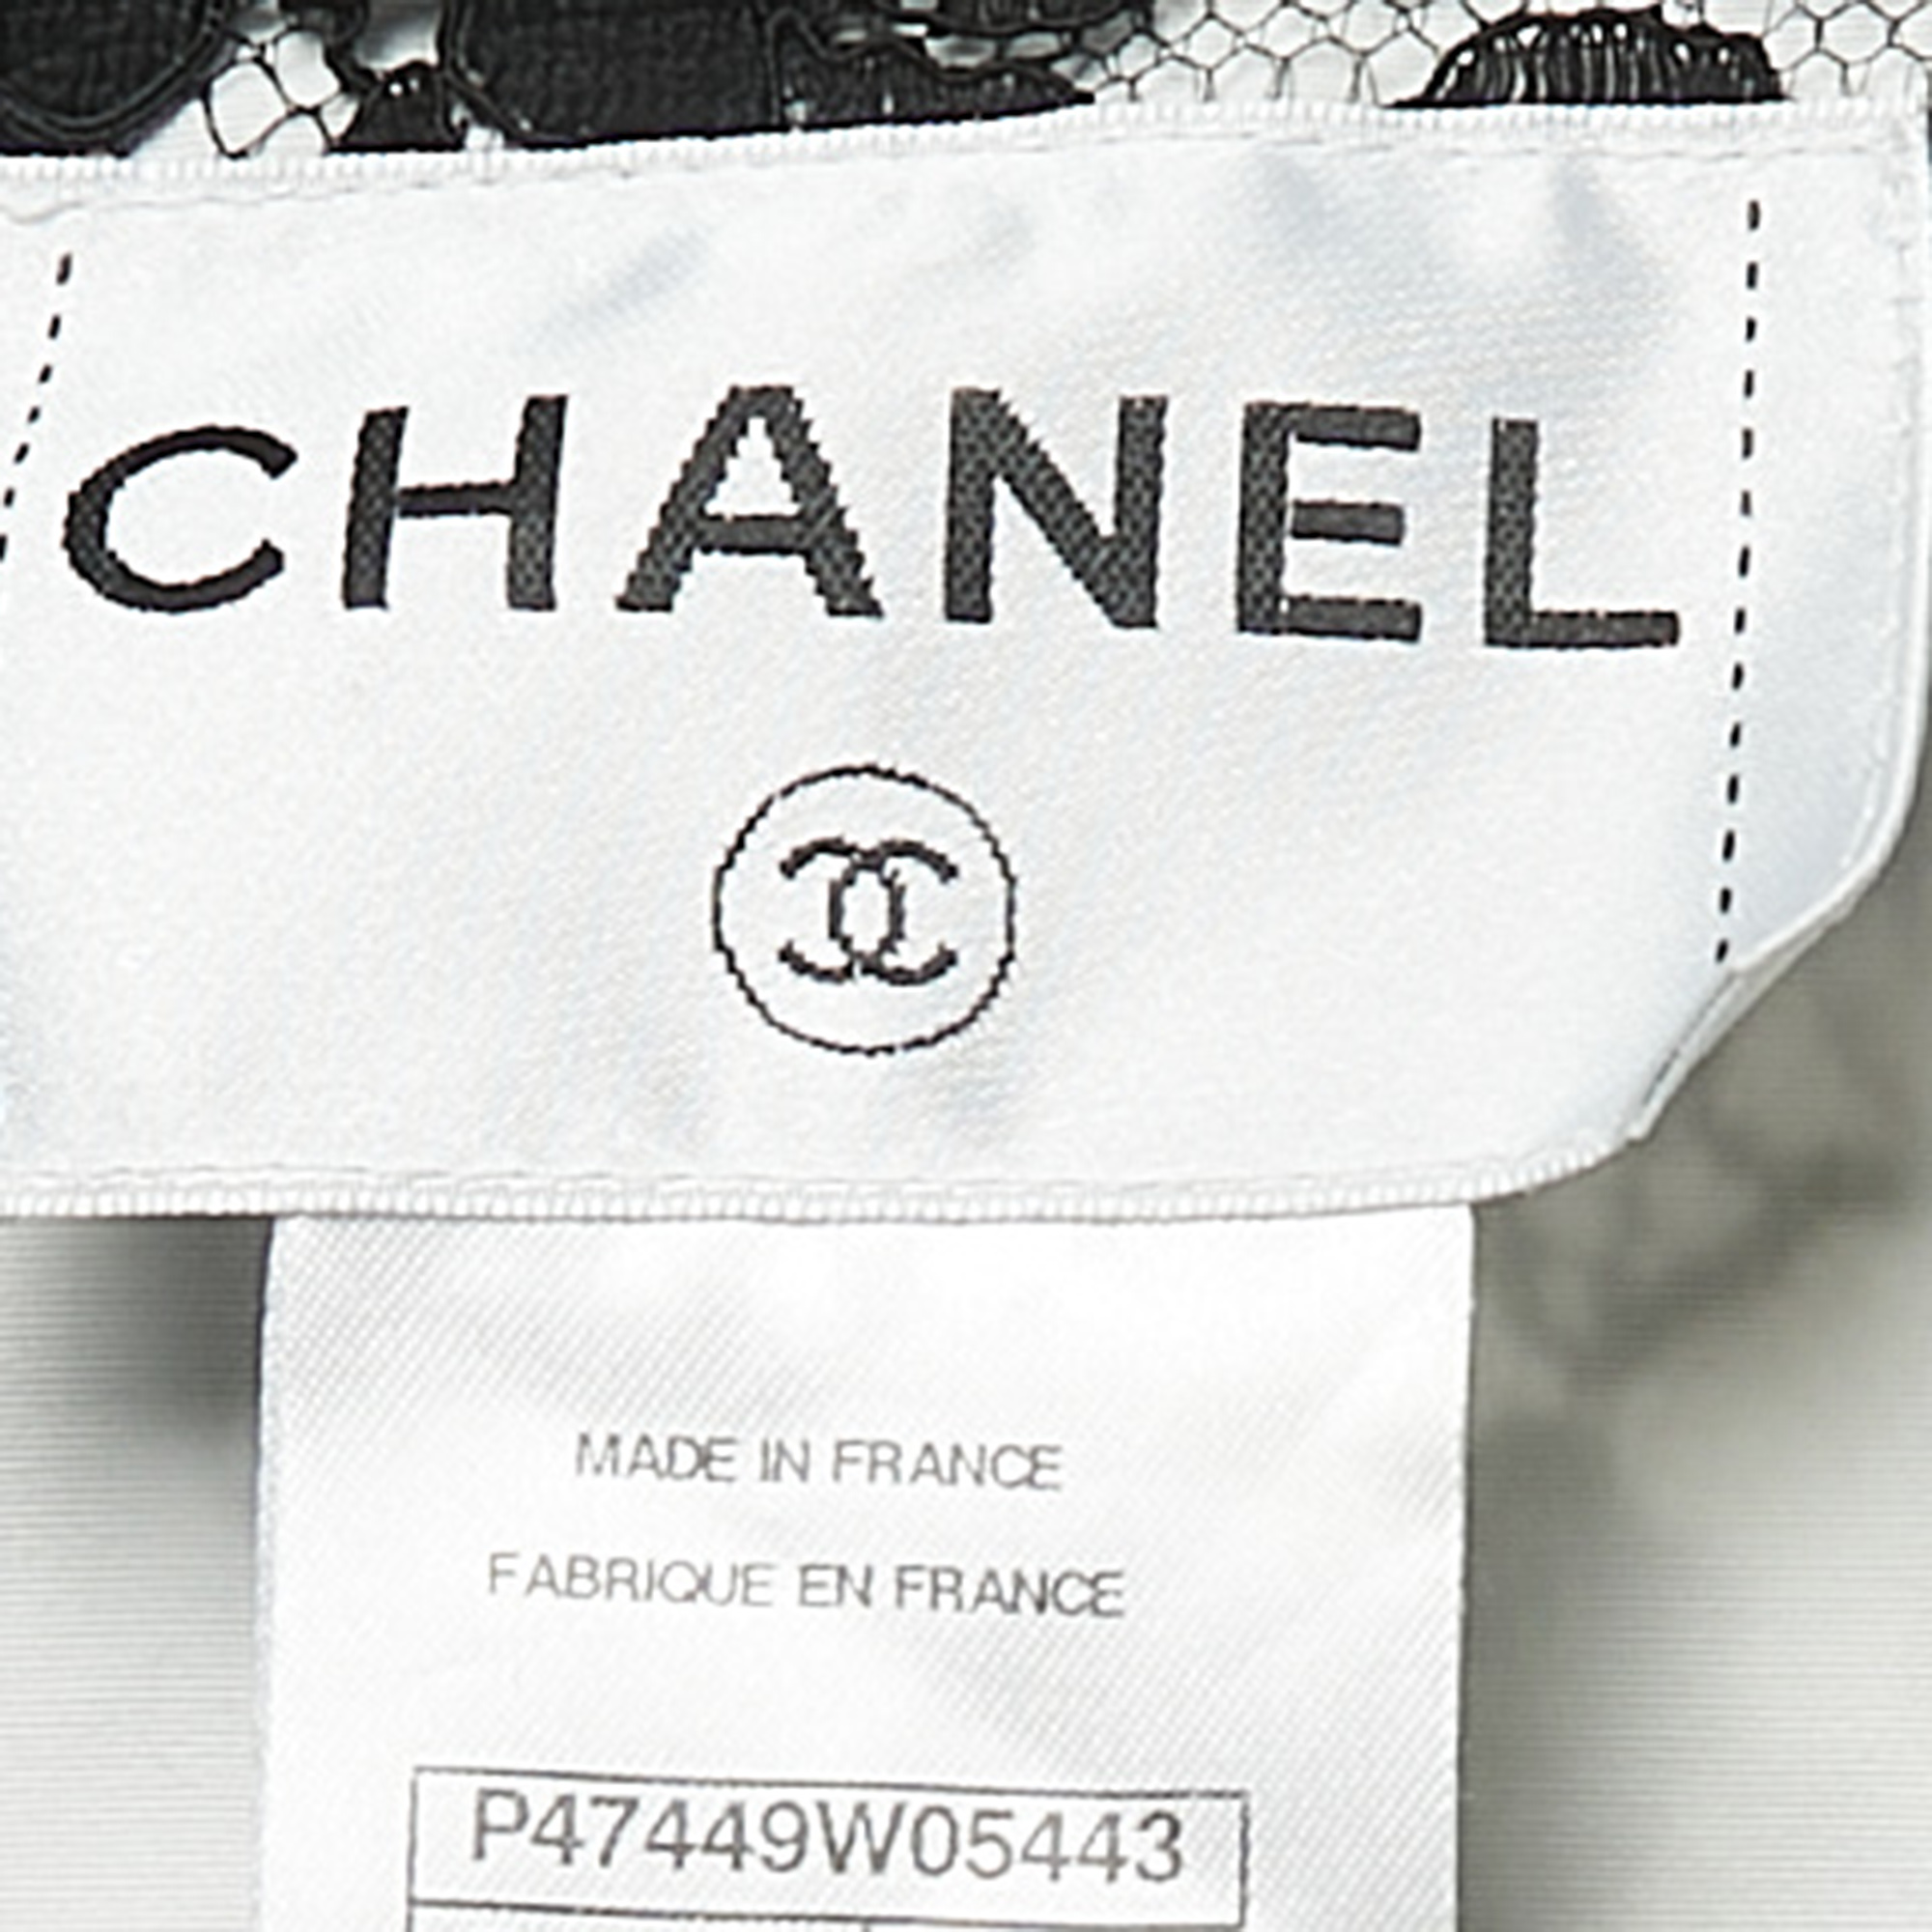 Chanel Black/White Floral Lace Single Button Blazer L